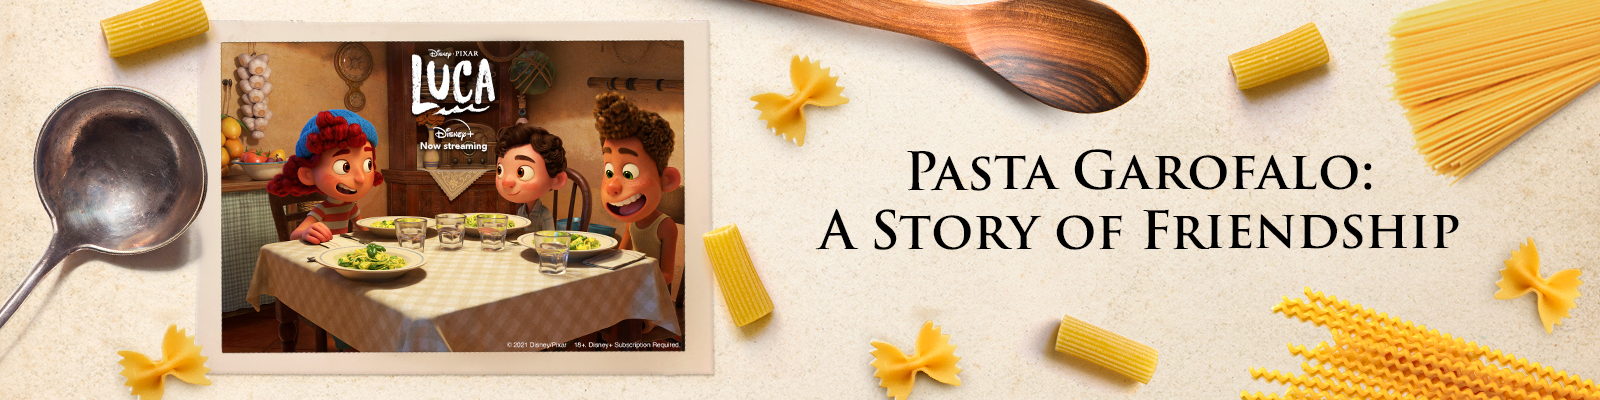 Pasta Garofalo celebrates friendship with the #AmiciPerLaPasta campaign